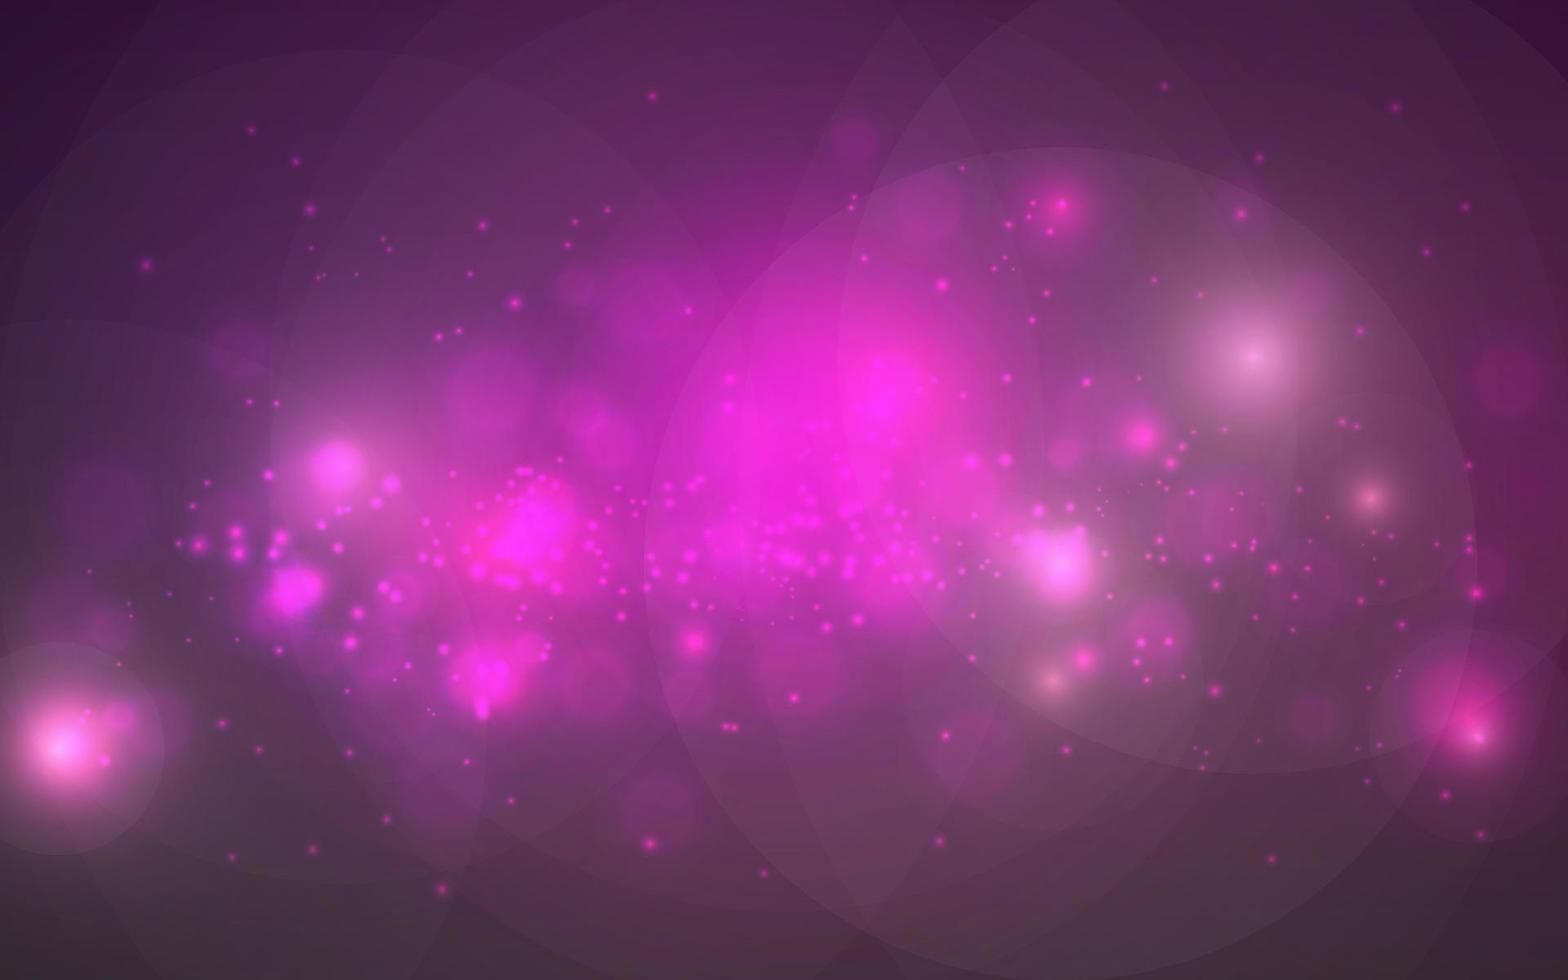 rosa galáxia luxo bokeh luz suave fundo abstrato, vetor eps 10 ilustração bokeh partículas, decoração de fundo